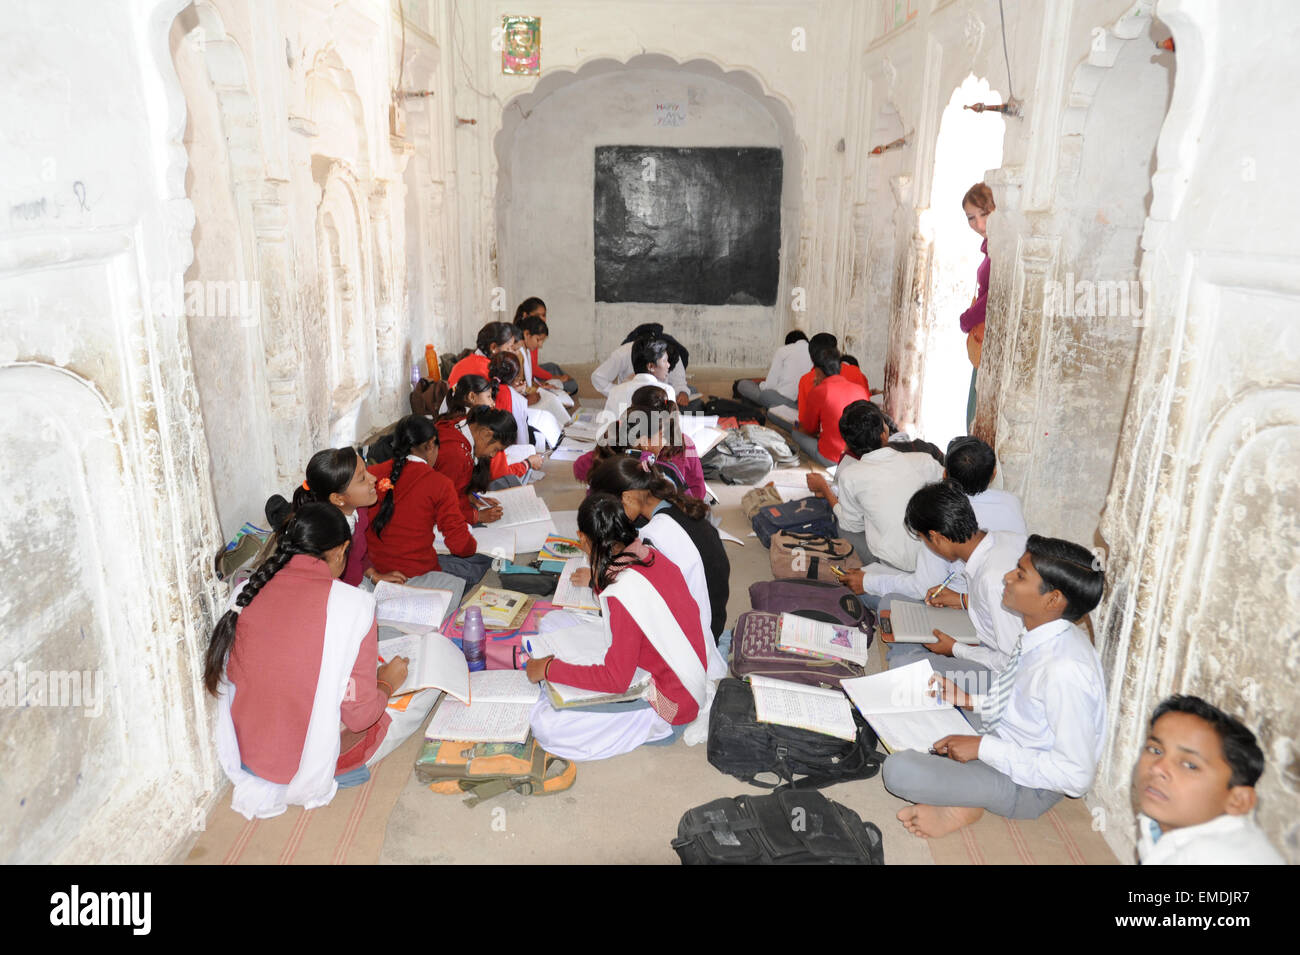 Khajuraho, India - 30 January 2015: Students studying in a classroom at Khajuraho on India Stock Photo